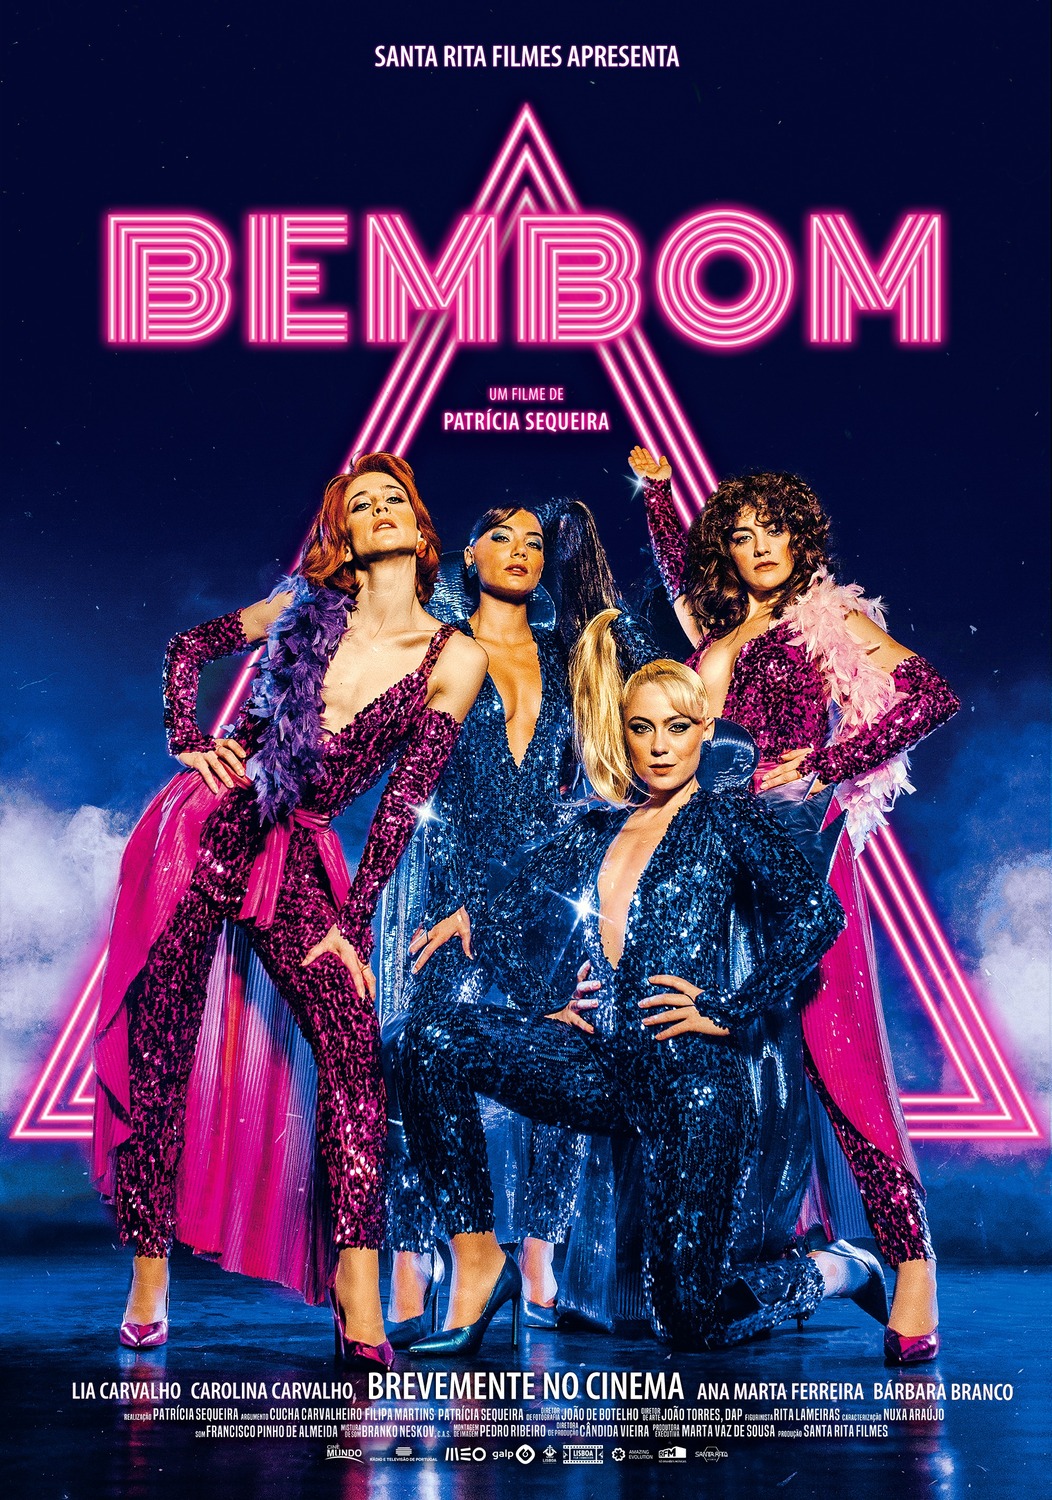 Extra Large Movie Poster Image for Bem Bom 